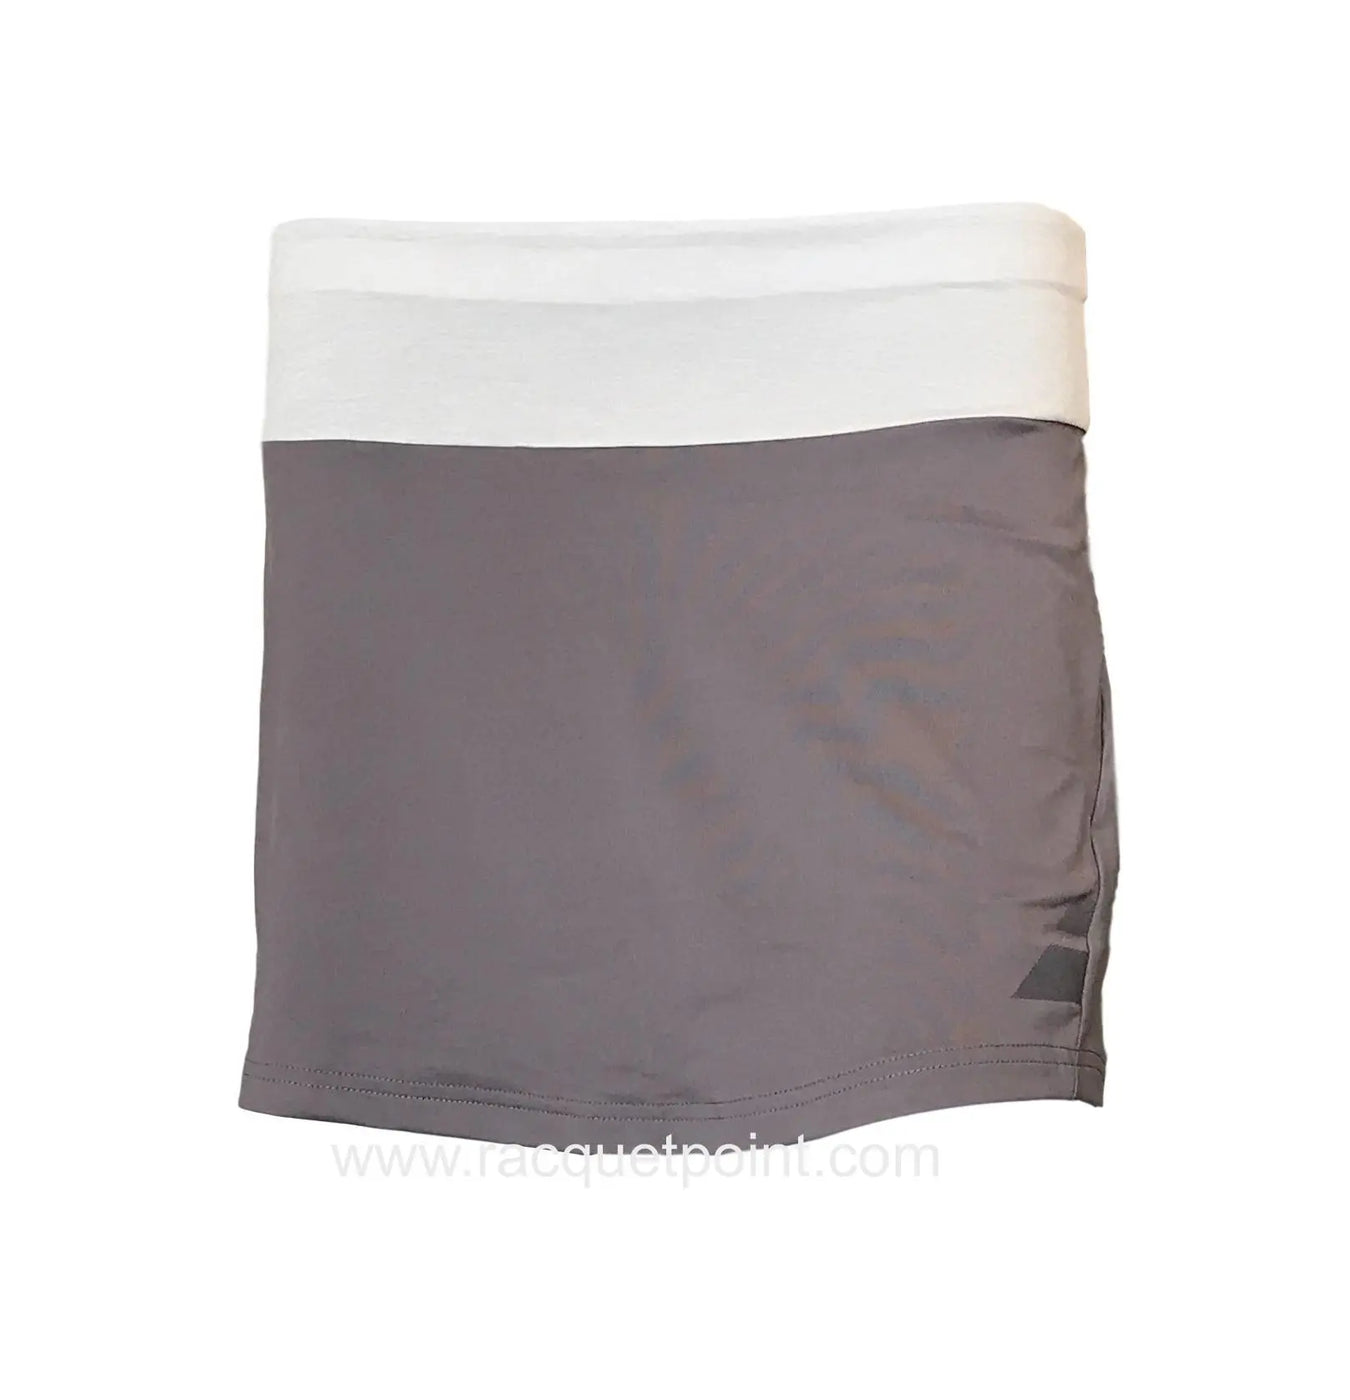 Babolat Women's Perf 14" Long Tennis Skirt  - Castlerock Grey Racquet Point